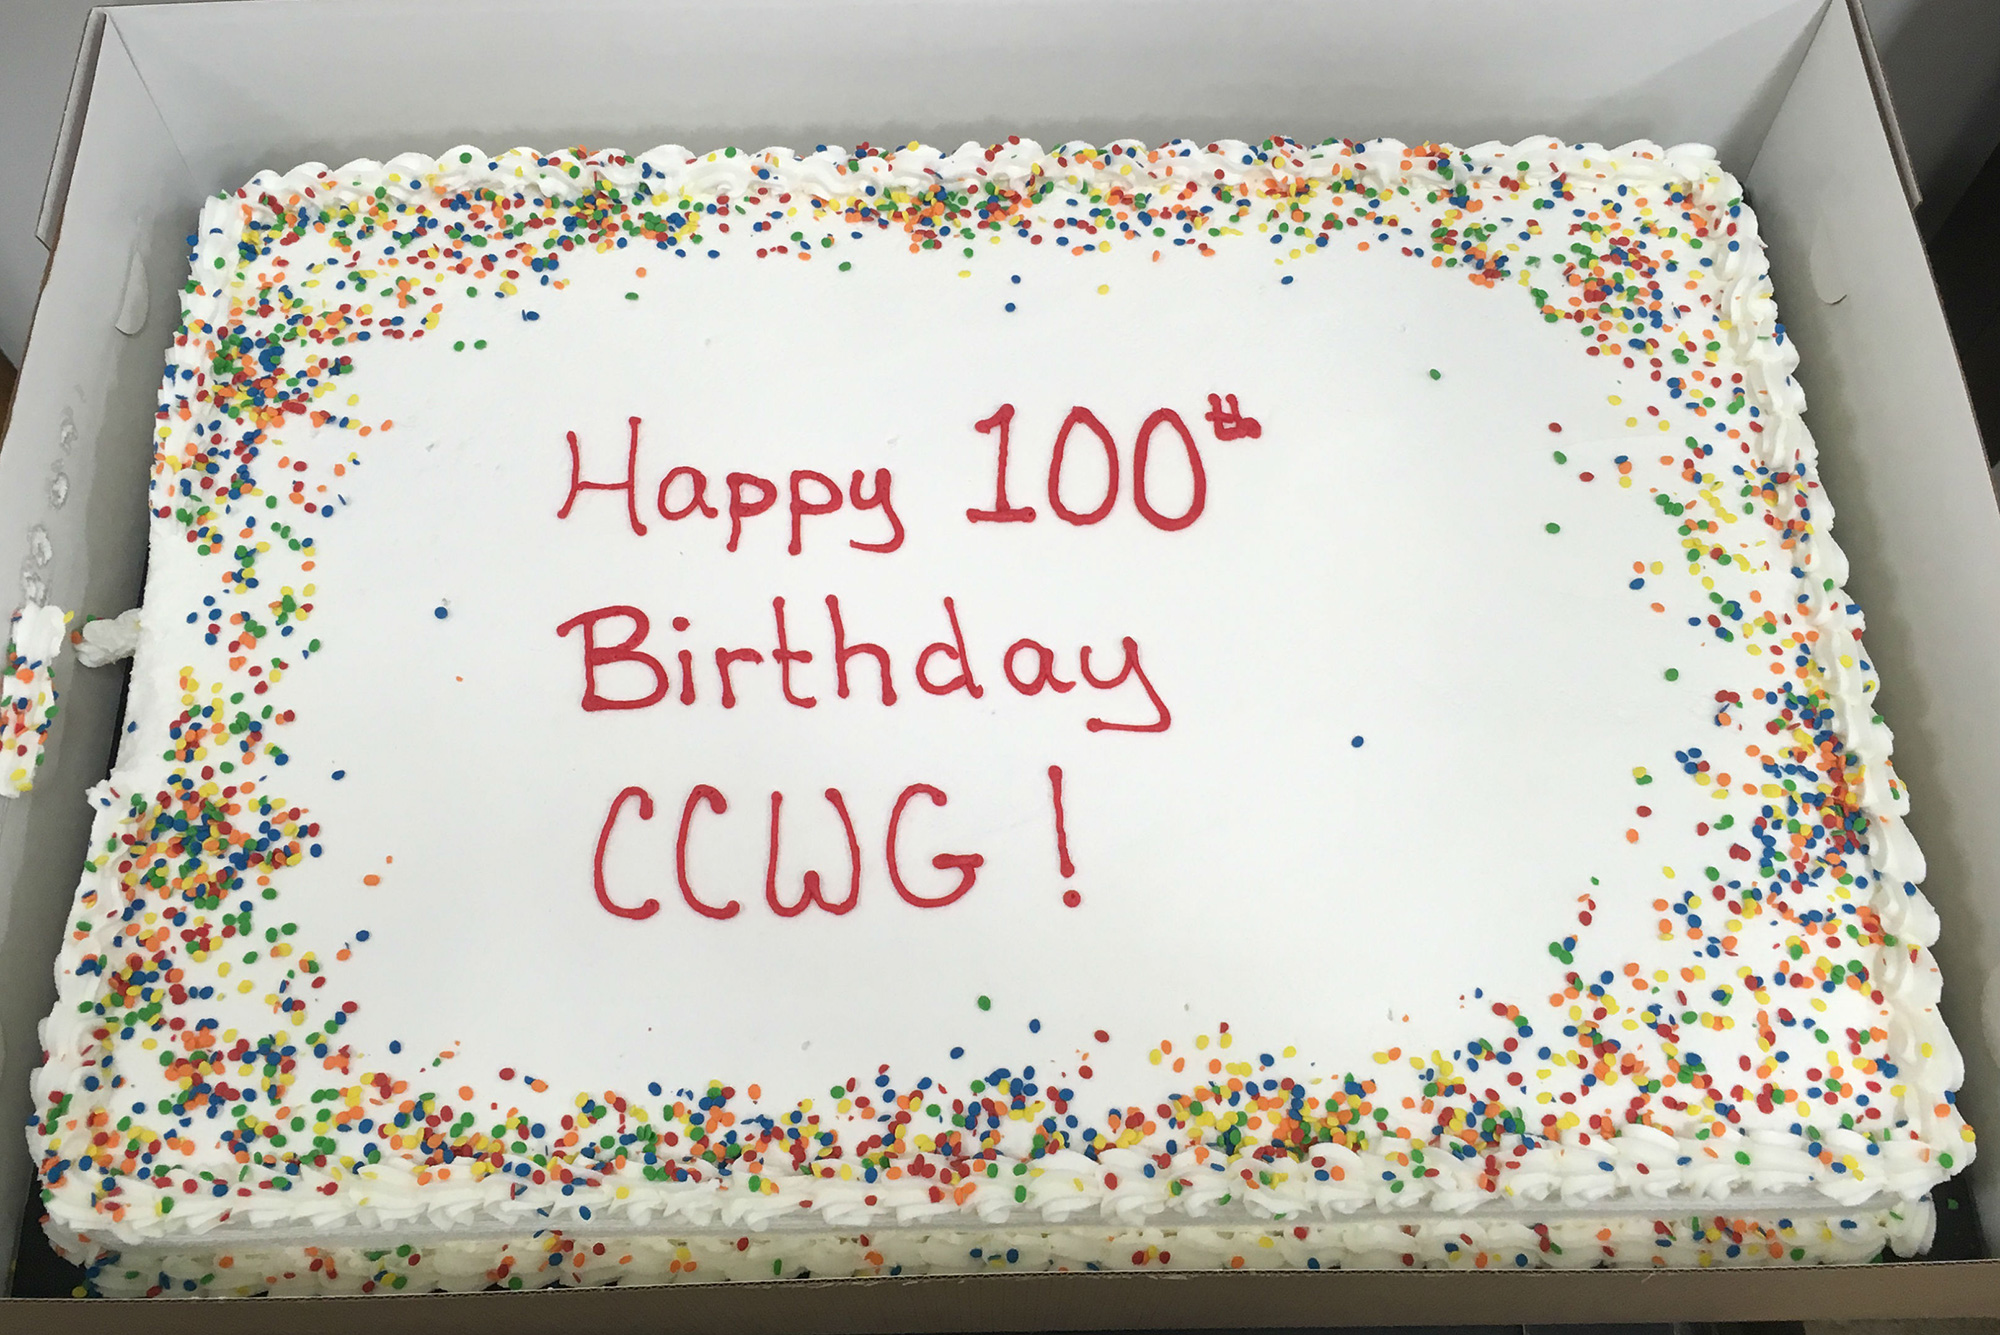 Happy 10th Birthday CCWG